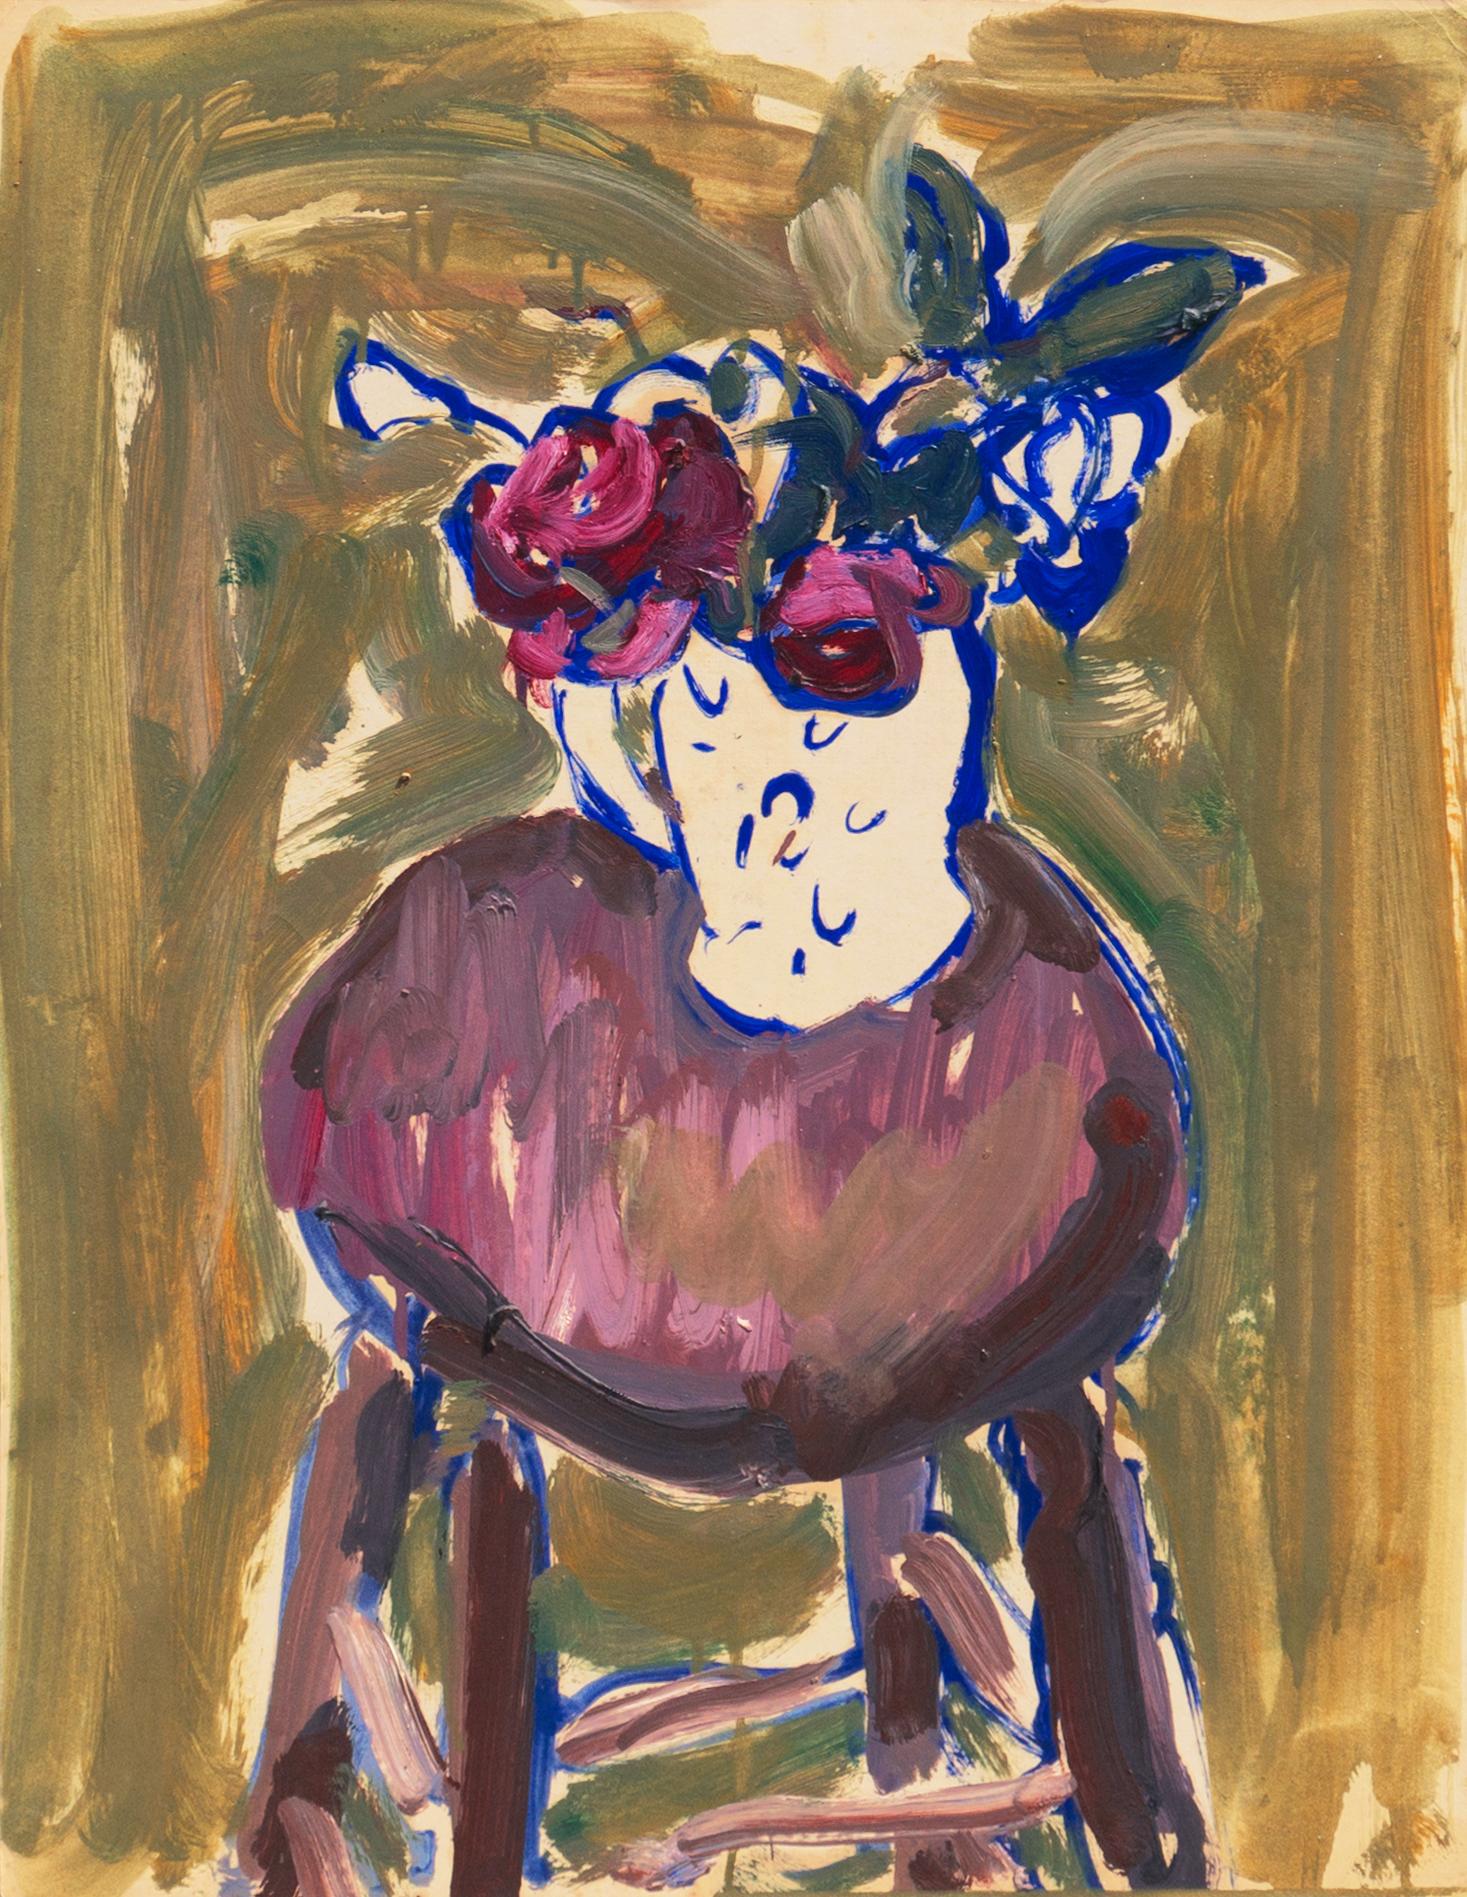 Roses de chien dans une cruche blanche", Louvre, Salon d'Automne, Académie Chaumière, LACMA